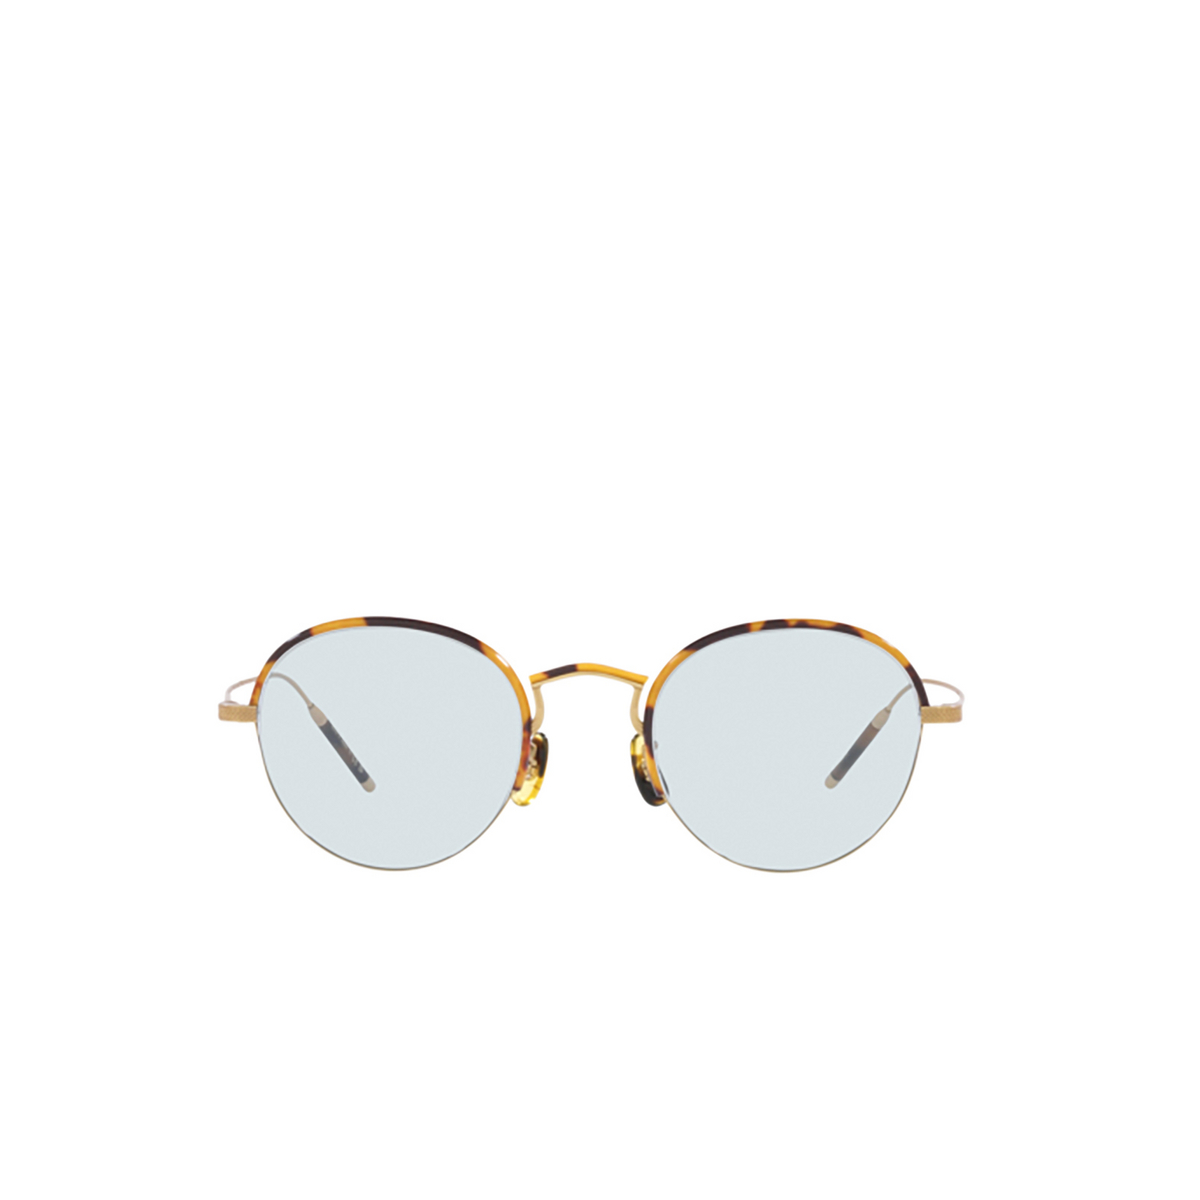 Oliver Peoples TK-6 Eyeglasses 5252 Gold - front view